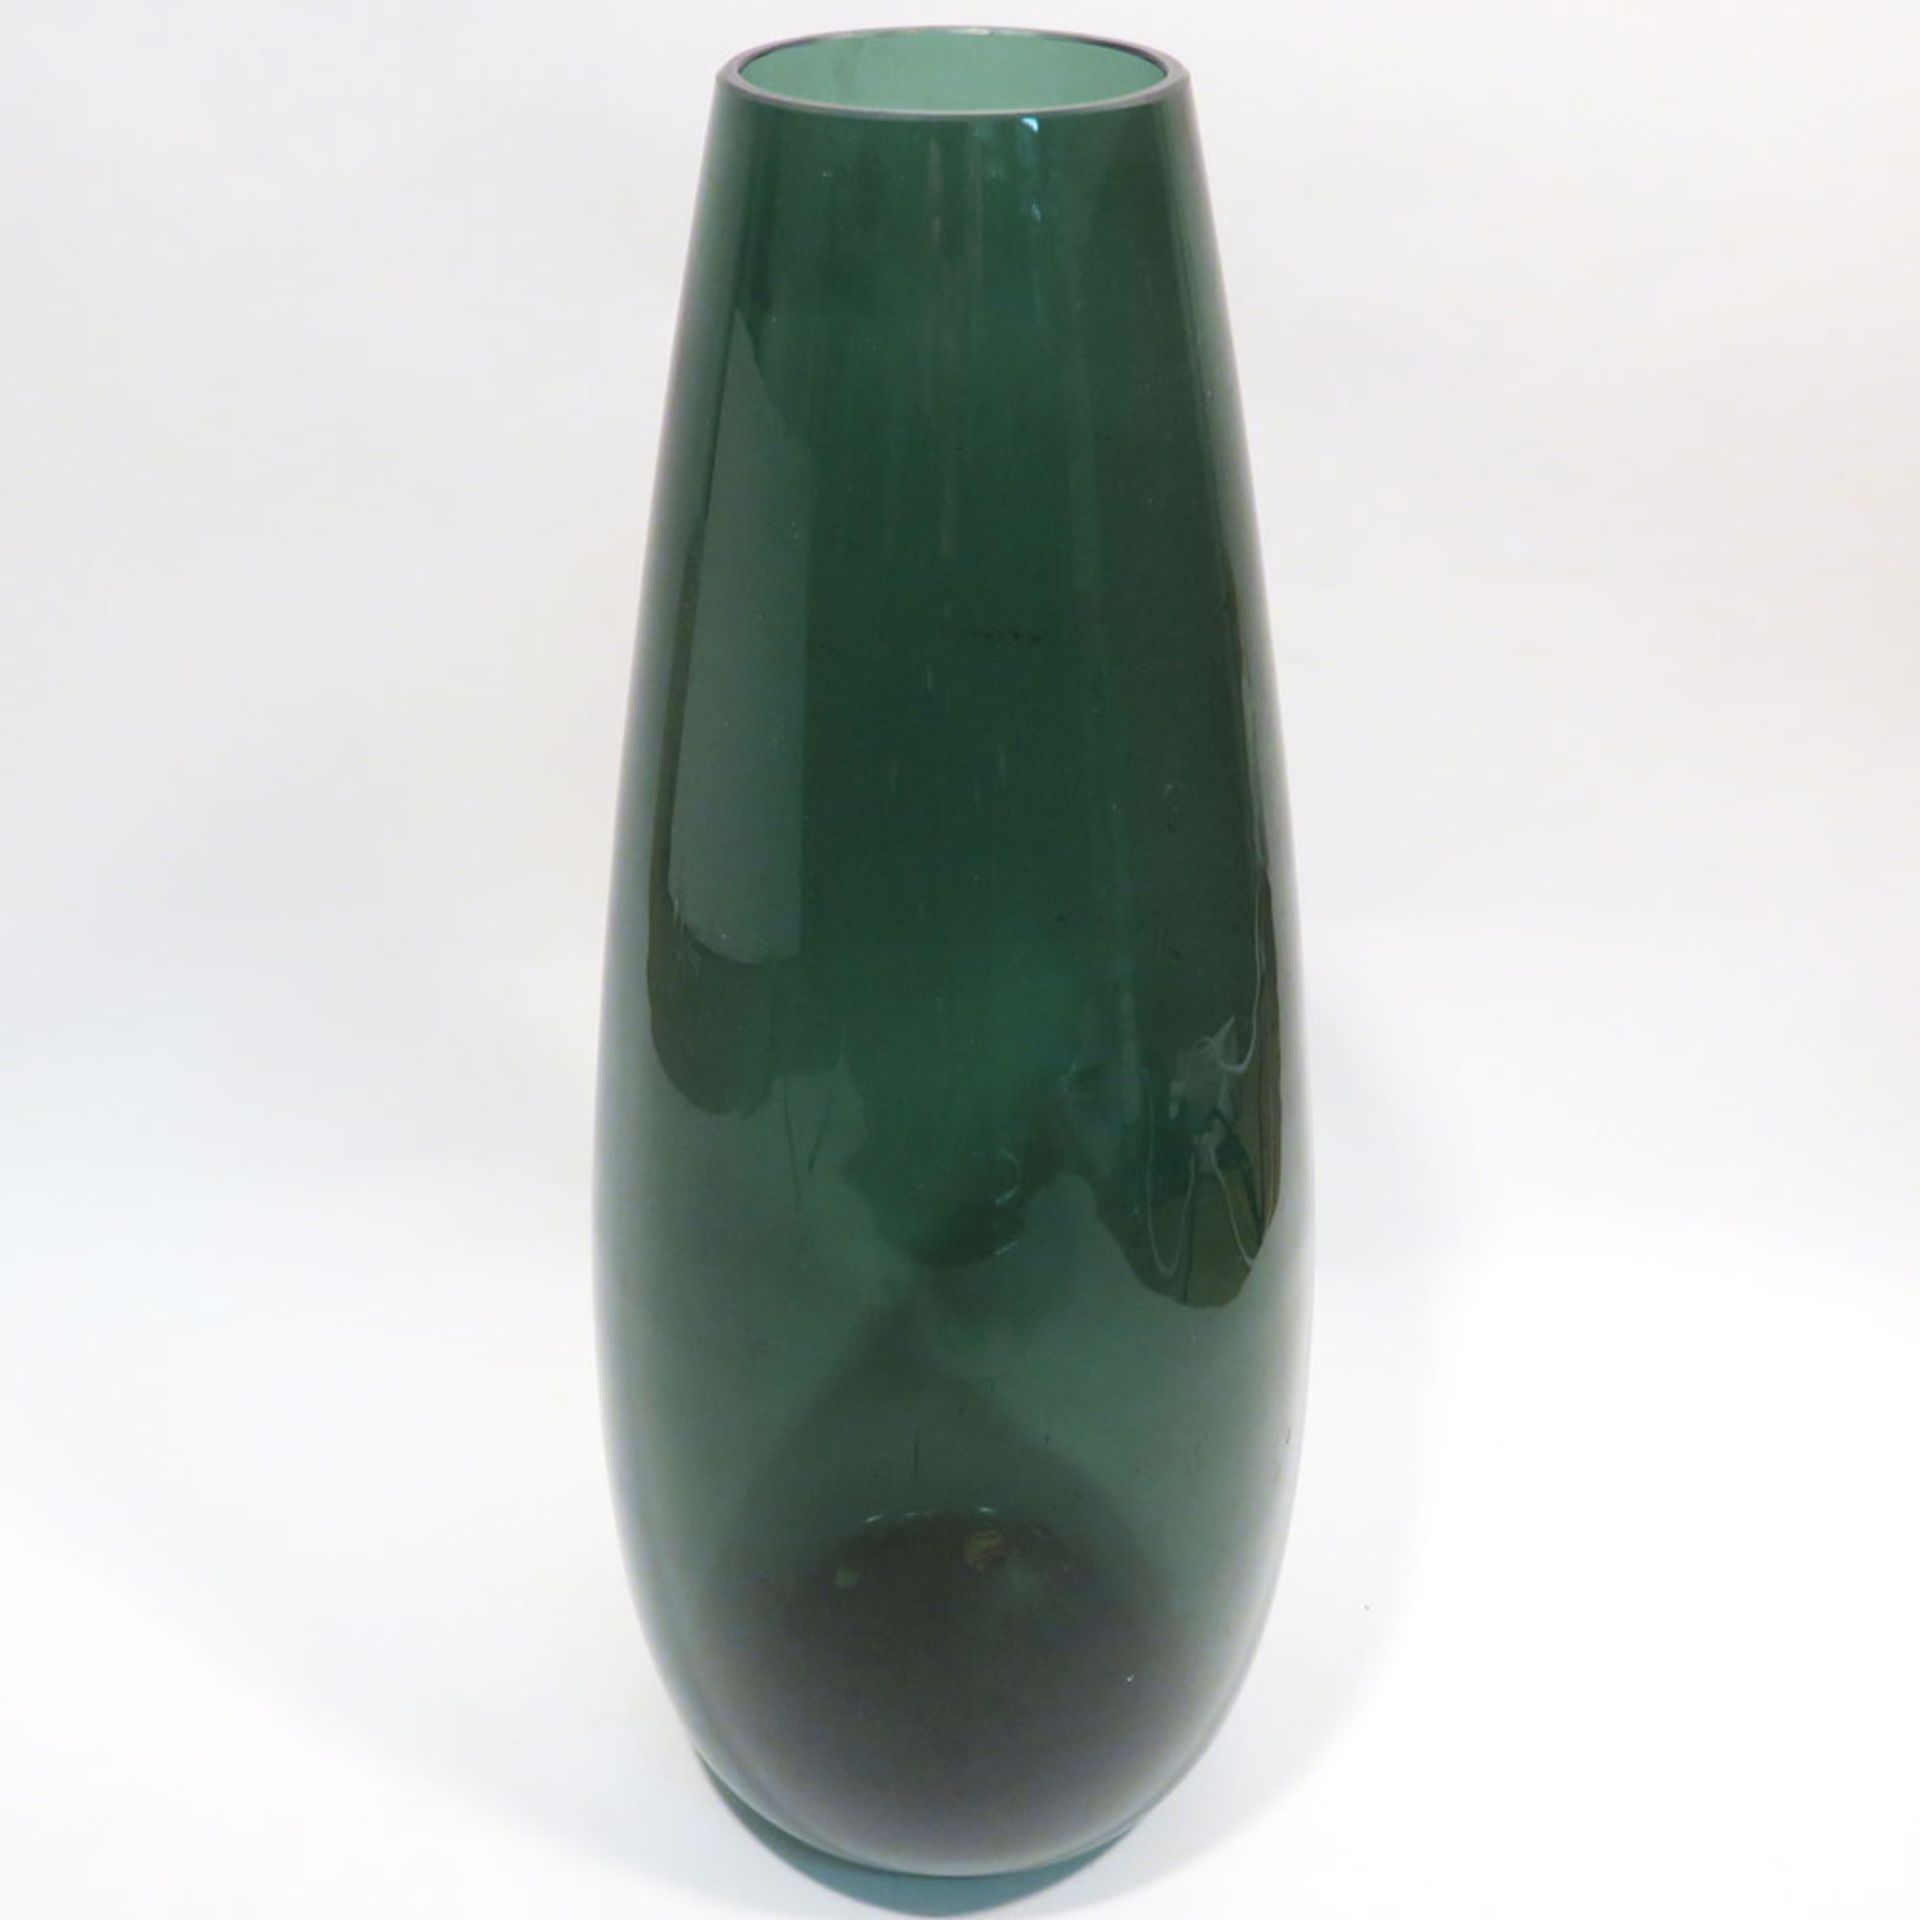 VaseEntwurf eventuell Wilhelm Wagenfeld. Grünes Glas. Rand abgeschliffen. H. 47 cm. - Bild 2 aus 2